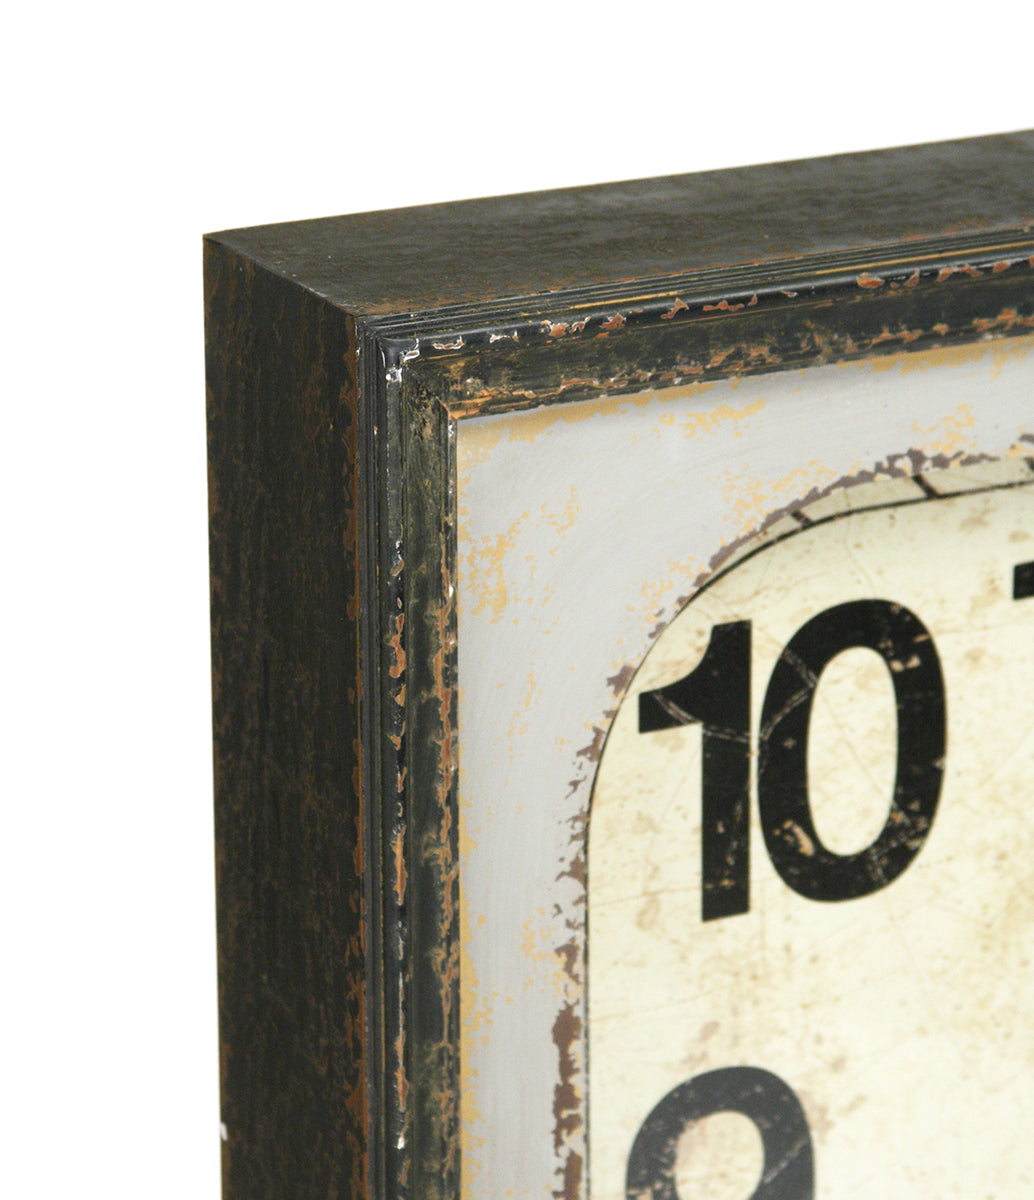 Wooden Calendar Wall Clock